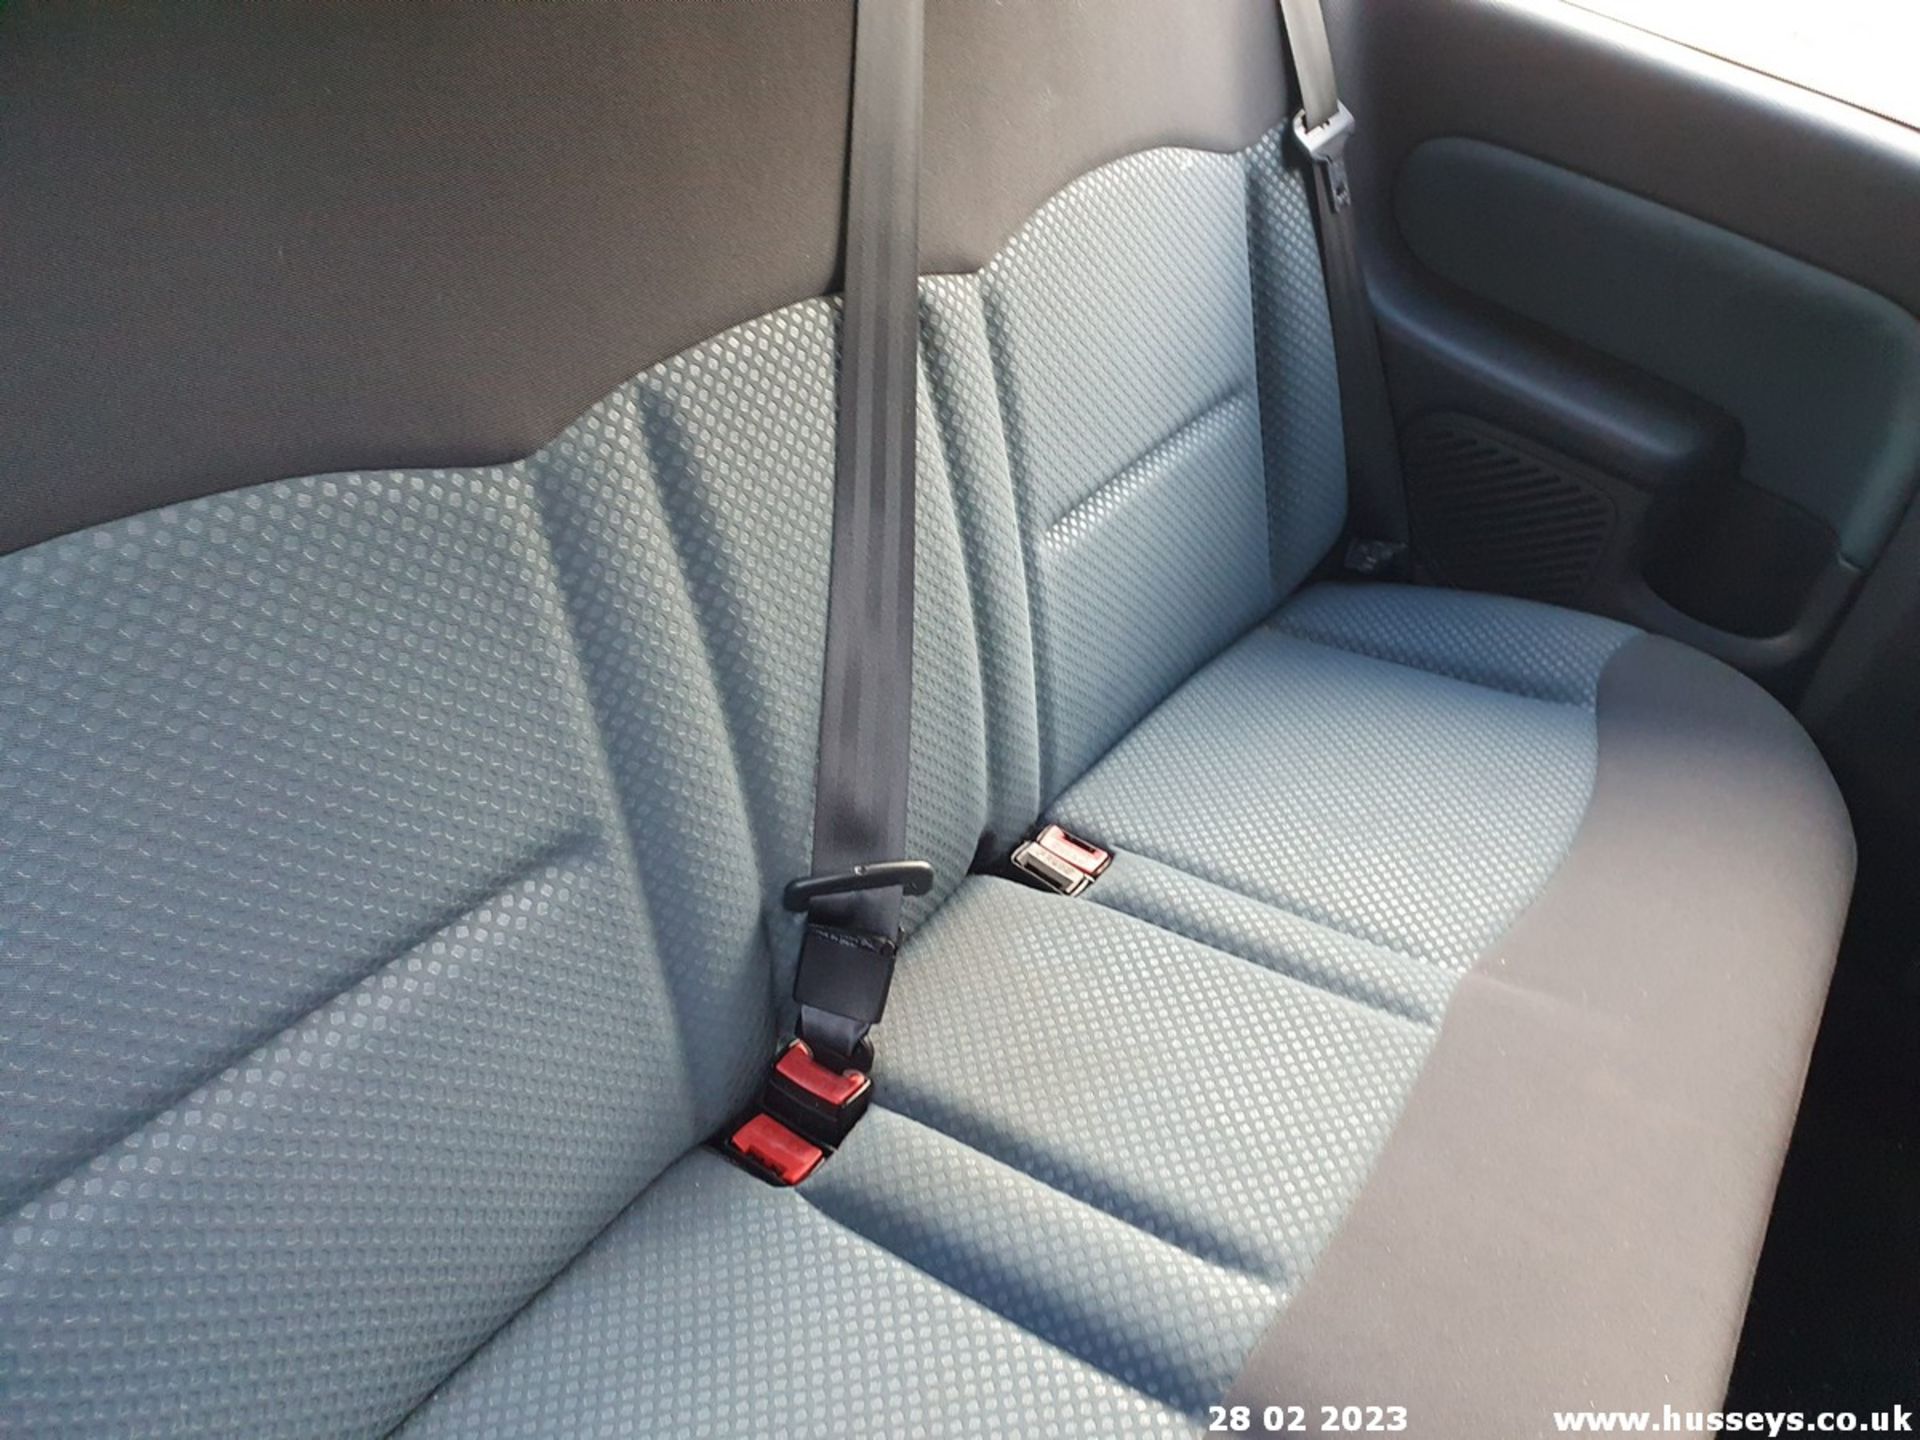 05/05 RENAULT CLIO EXTREME 16V - 1149cc 3dr Hatchback (Black, 961k) - Image 27 of 52